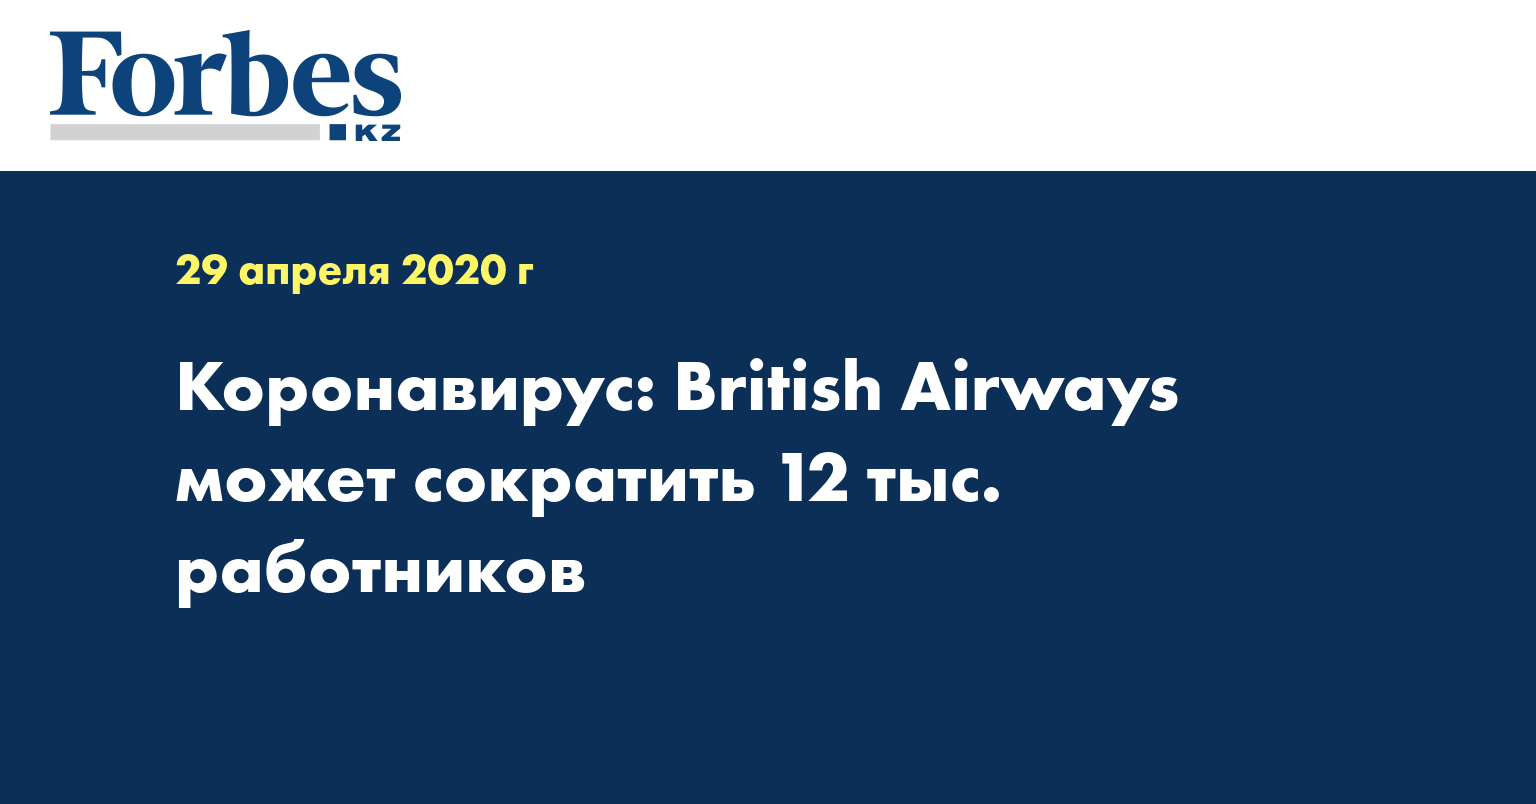 Коронавирус: British Airways может сократить 12 тыс. работников